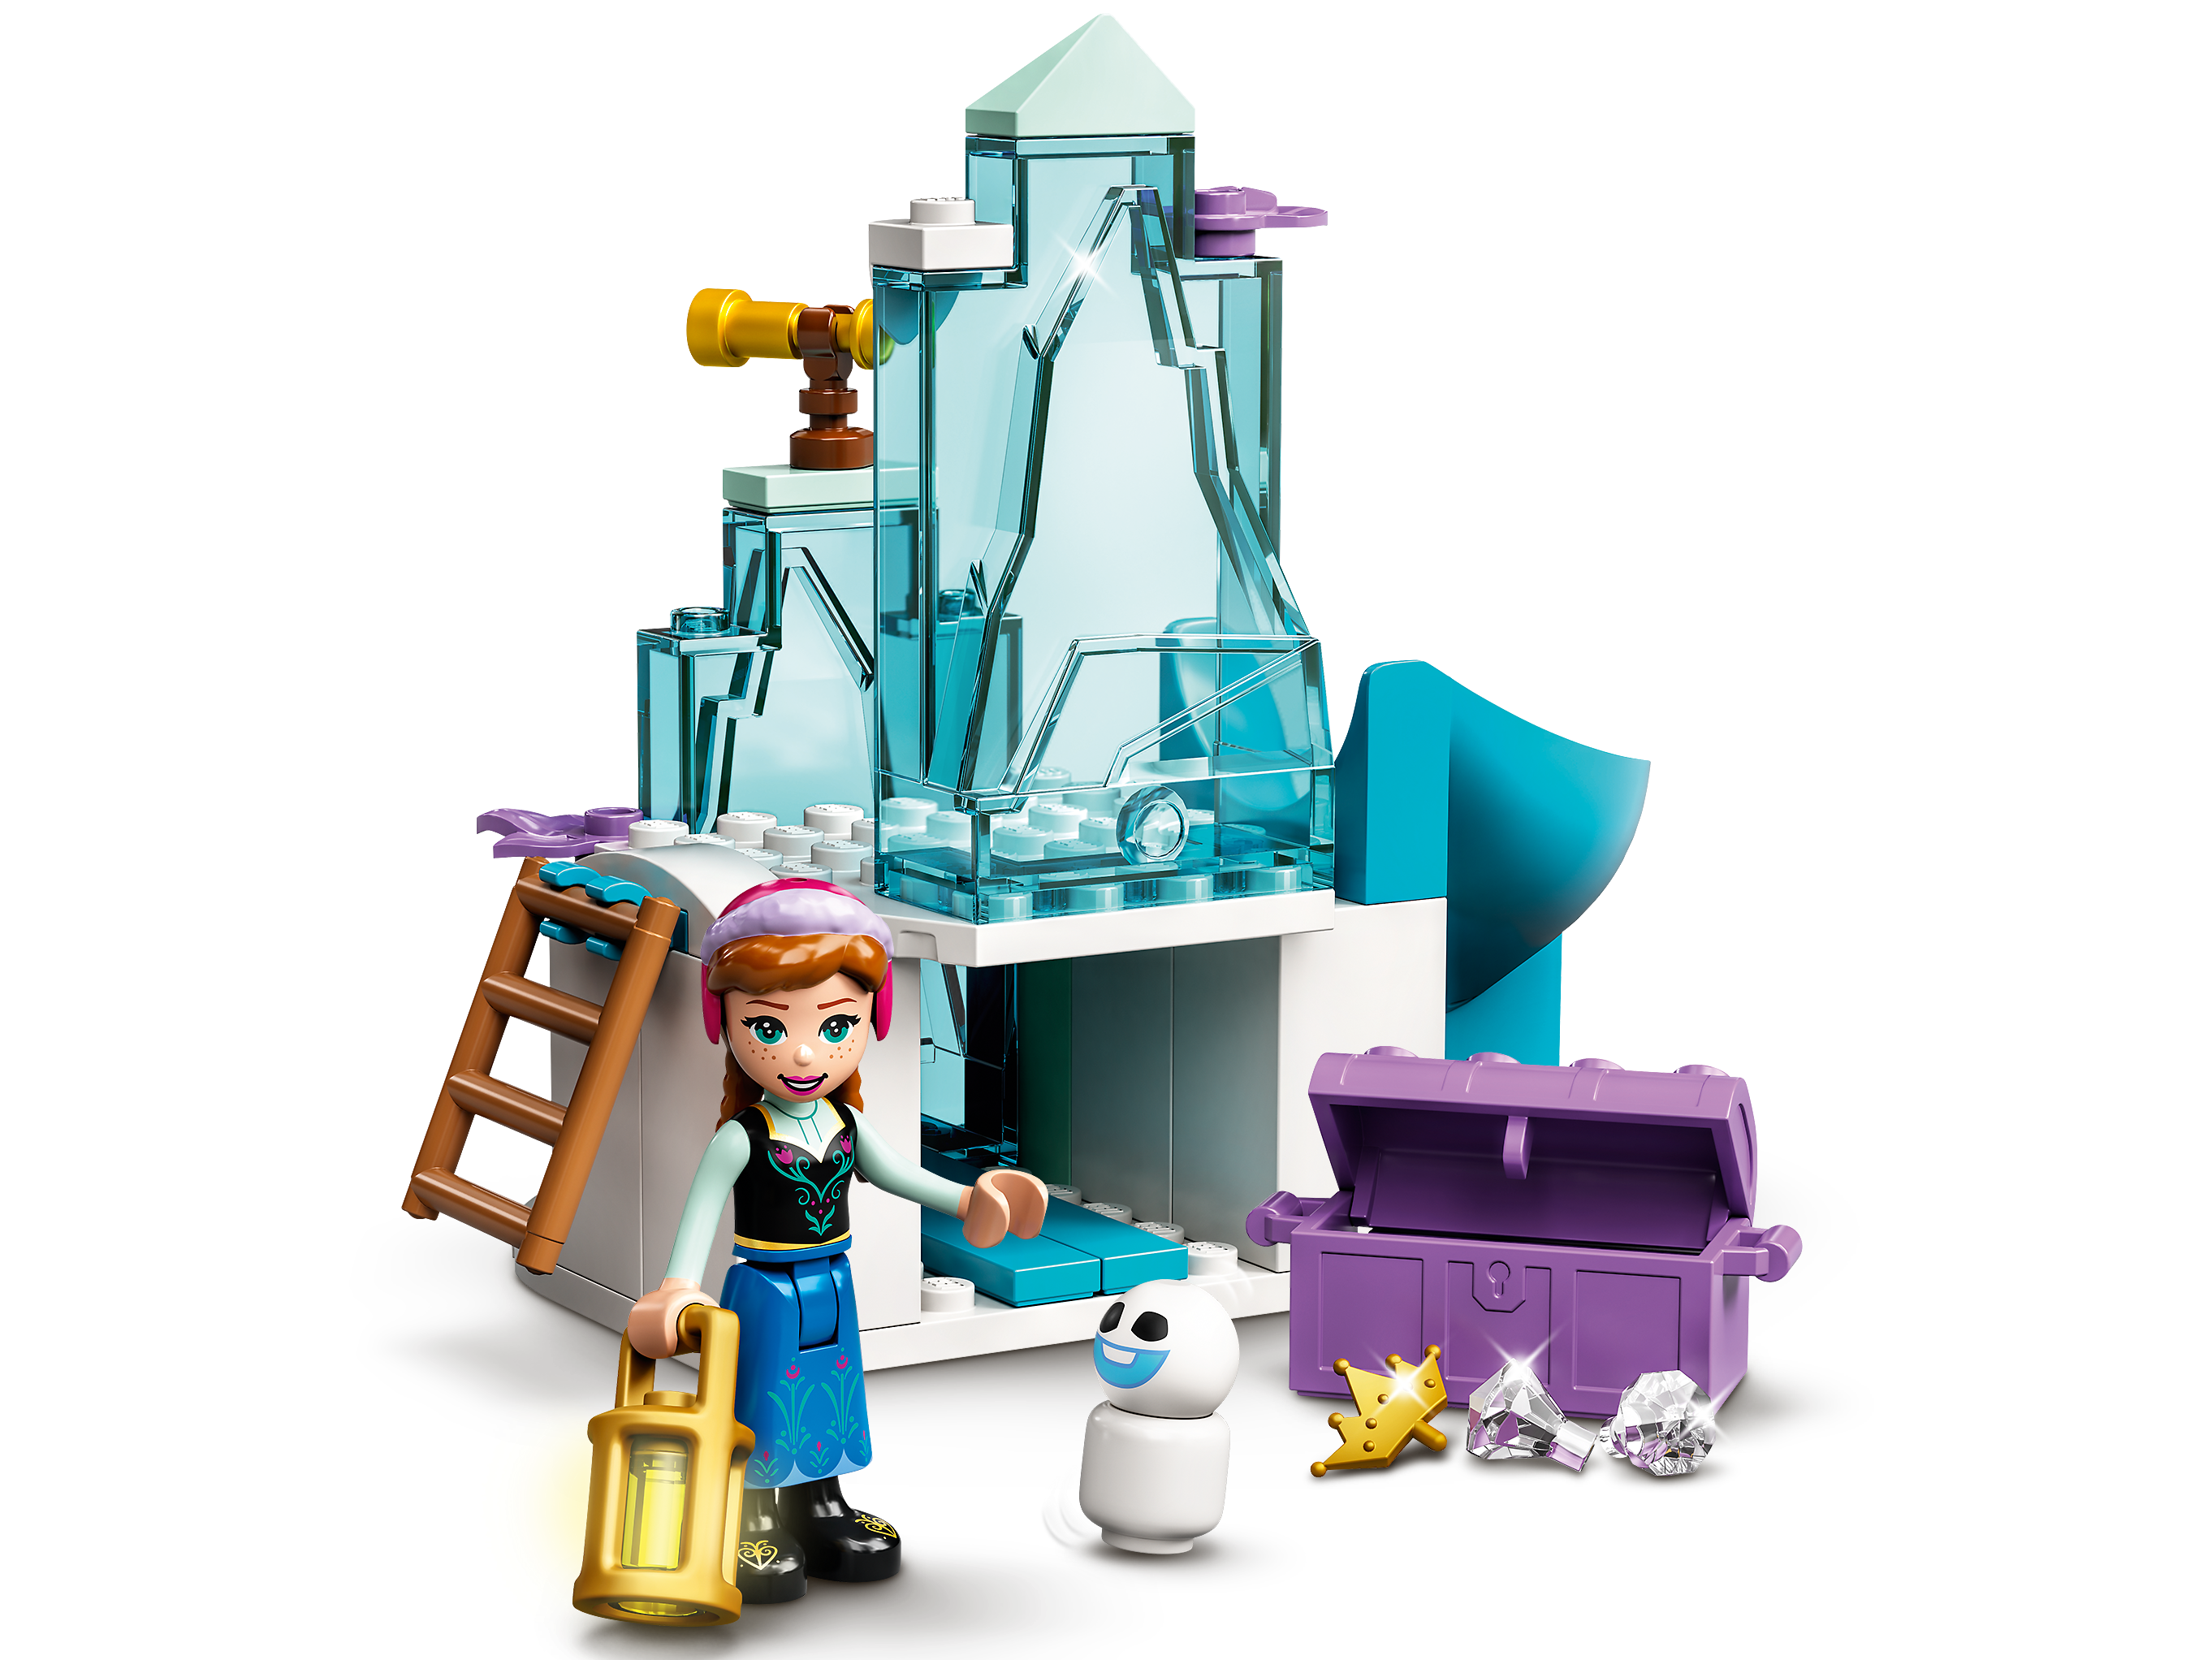 Jouets (LEGO Disney) - La Reine des Neiges (Le monde Féérique d